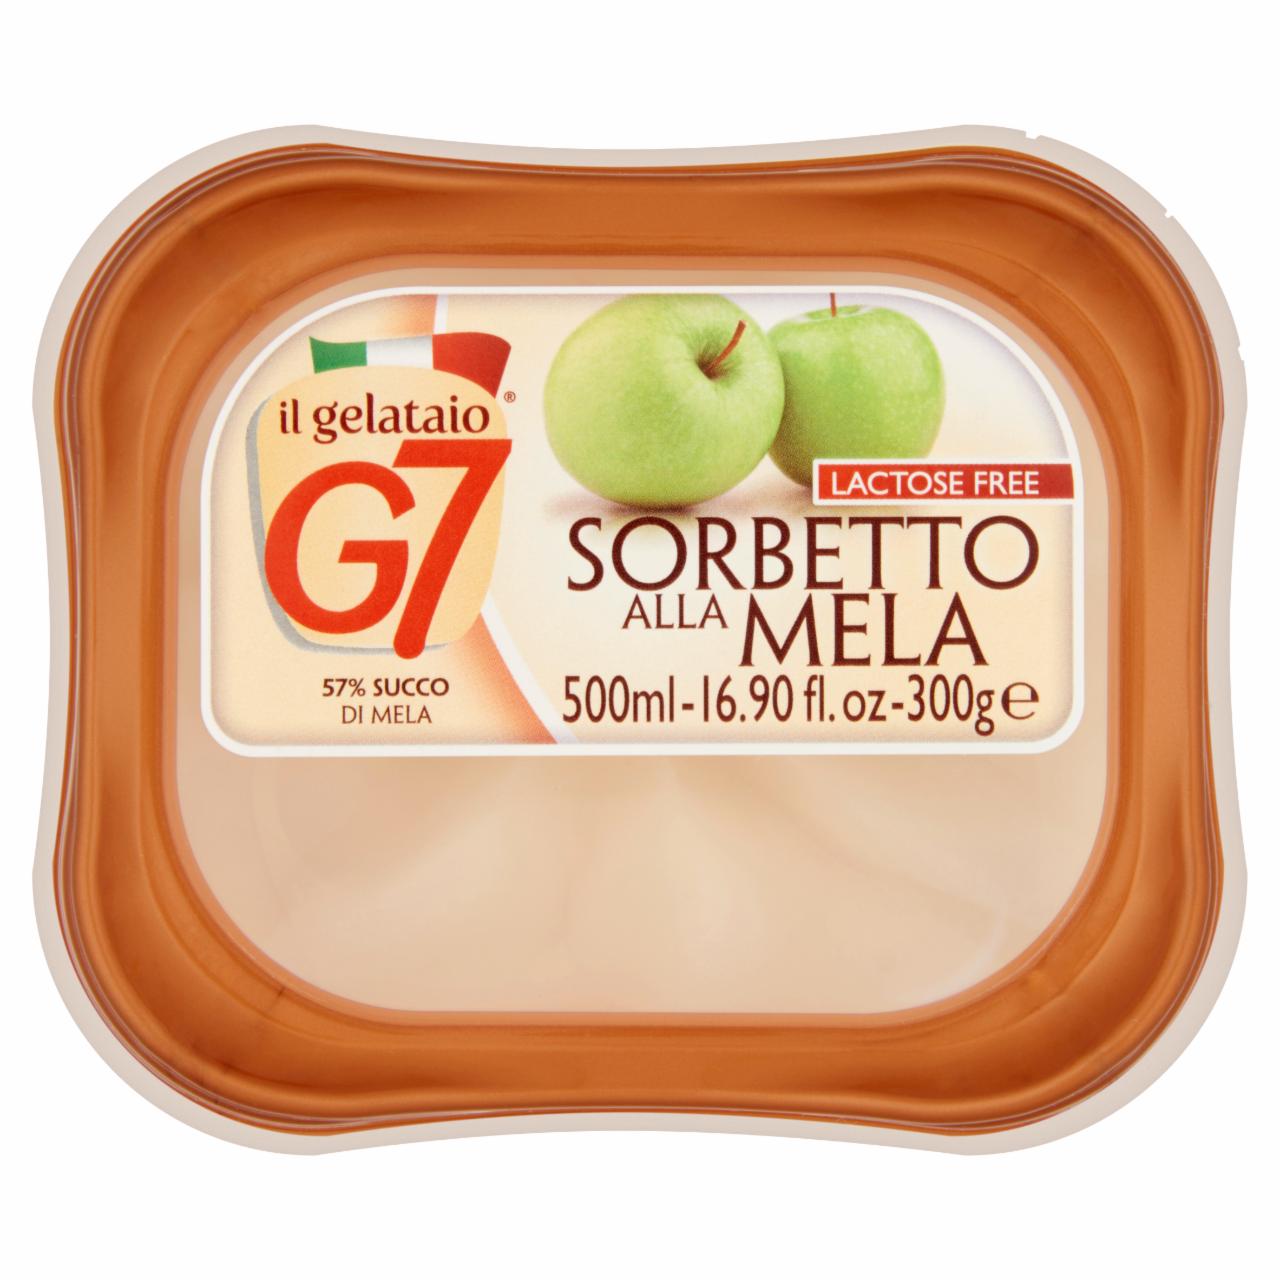 Képek - G7 Sorbetto Alla Mela alma szorbé 500 ml